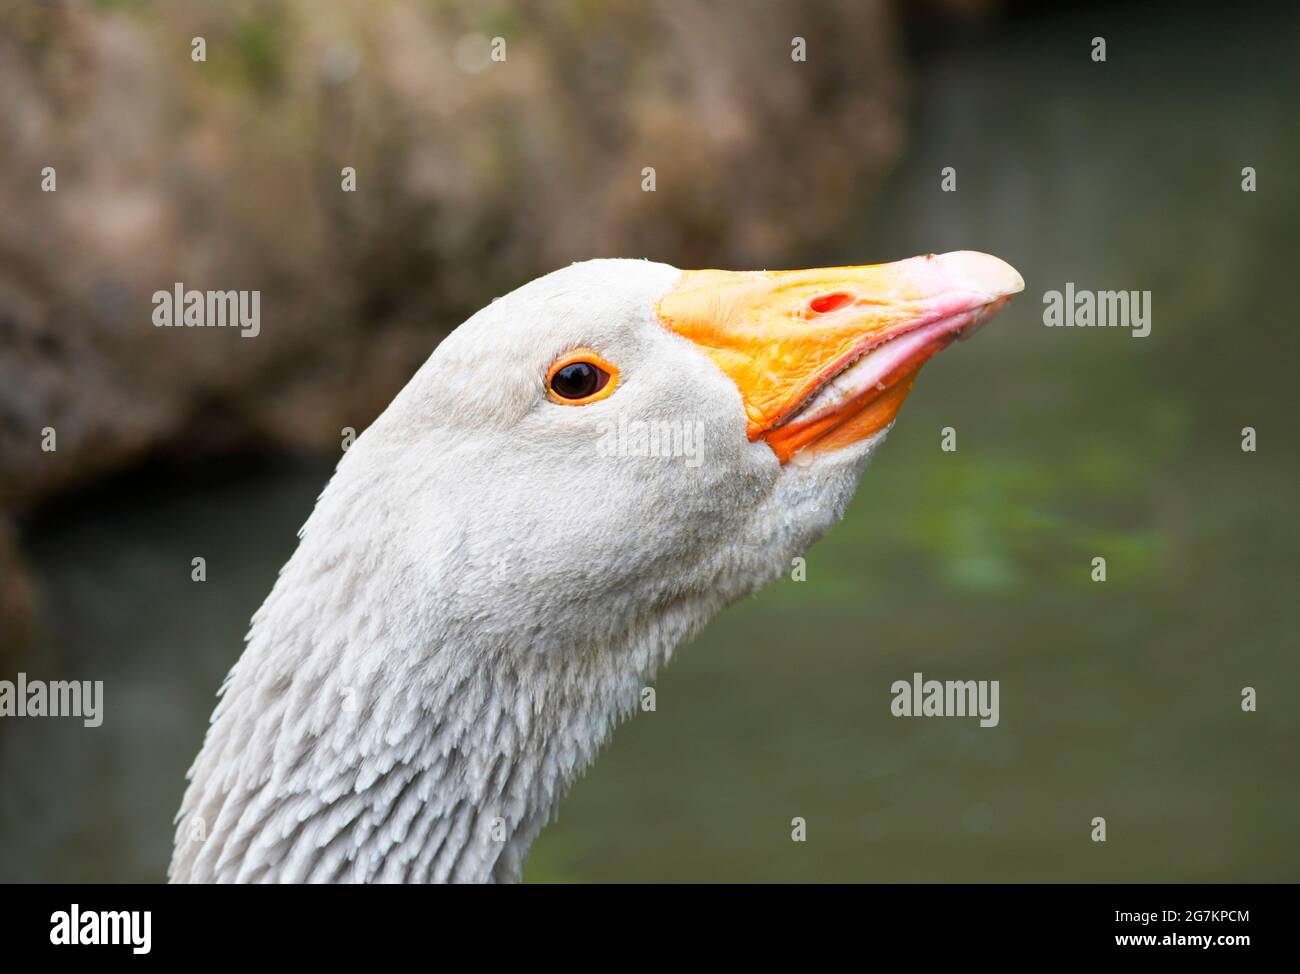 Seitenportrait einer grauen Gans mit orangefarbenem Schnabel. Vogel in Nahaufnahme. Stockfoto